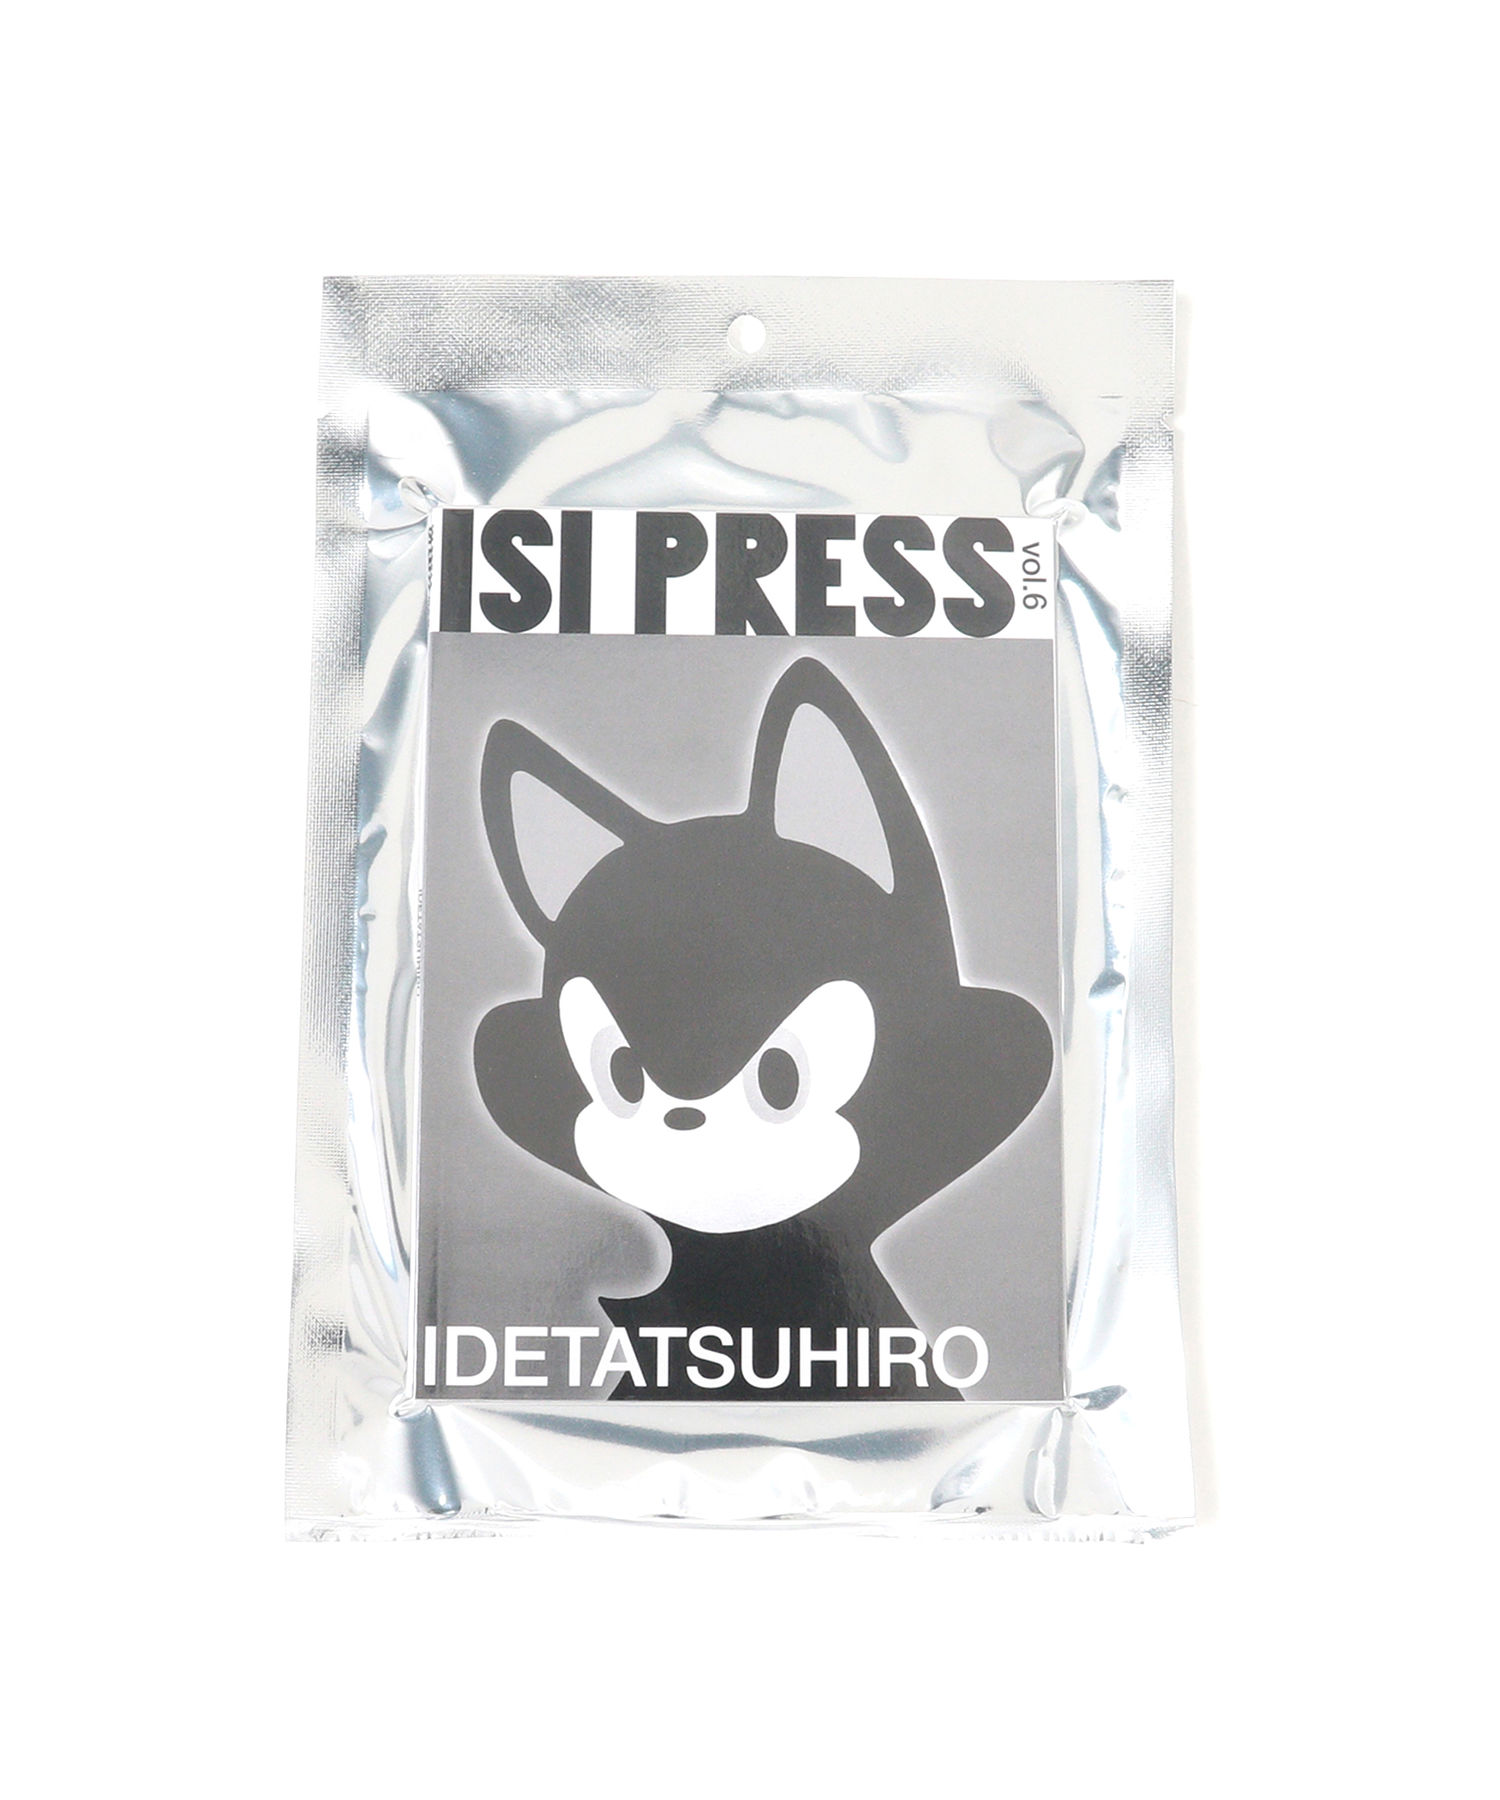 宅配便送料無料 ISI PRESS 最高の品質の vol.6 TATSUHIRO IDE